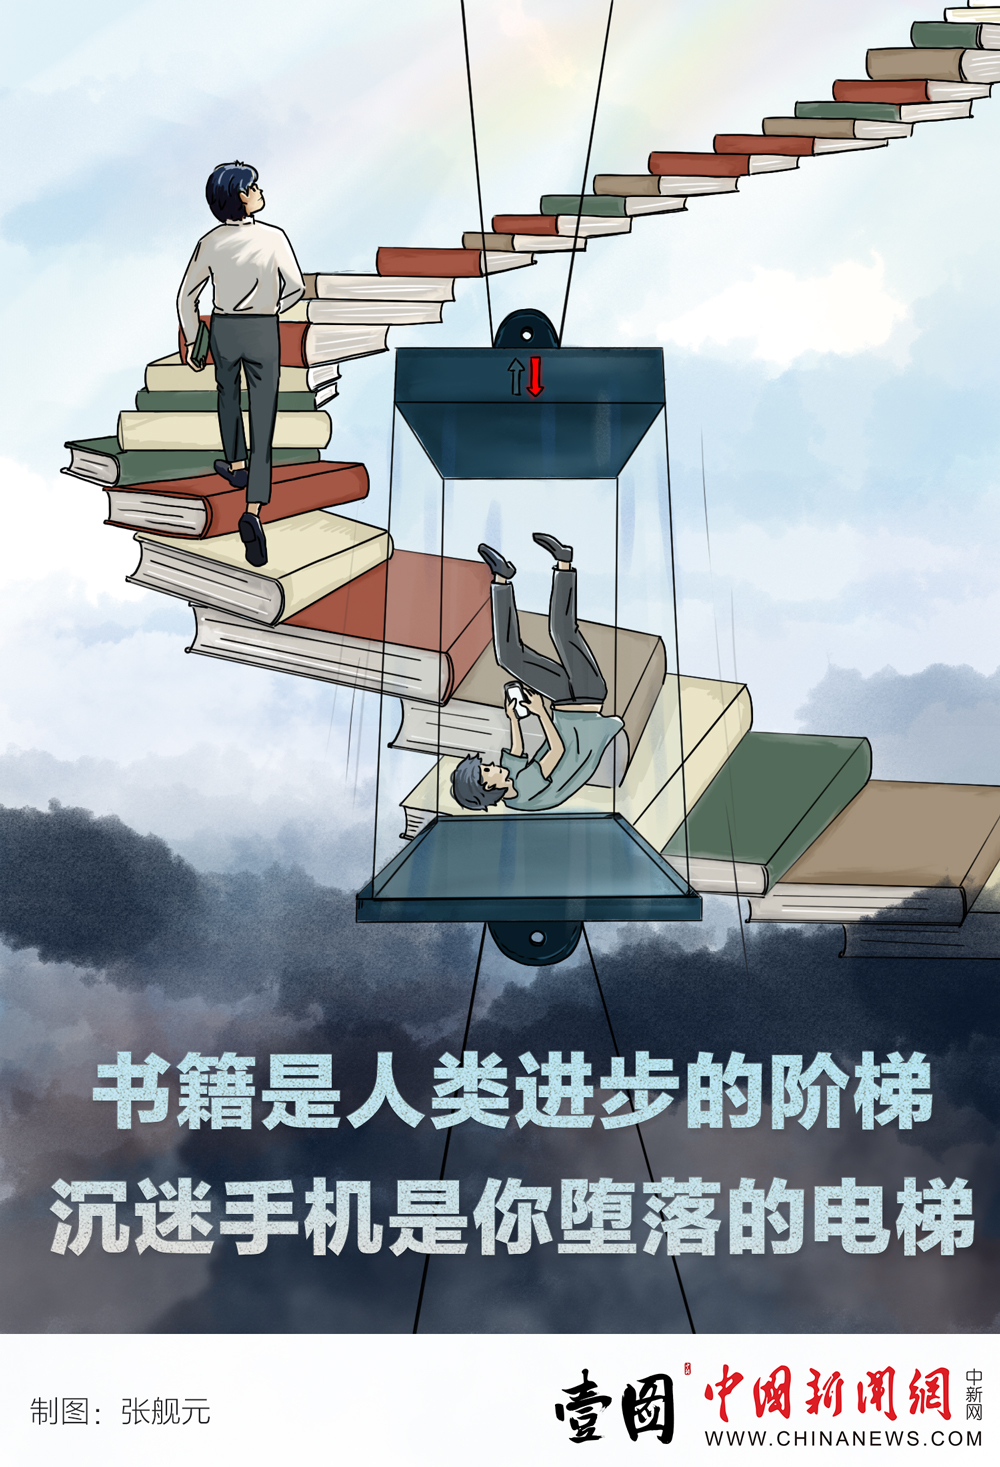 【壹图】书籍是人类进步的阶梯 沉迷手机是你堕落的电梯